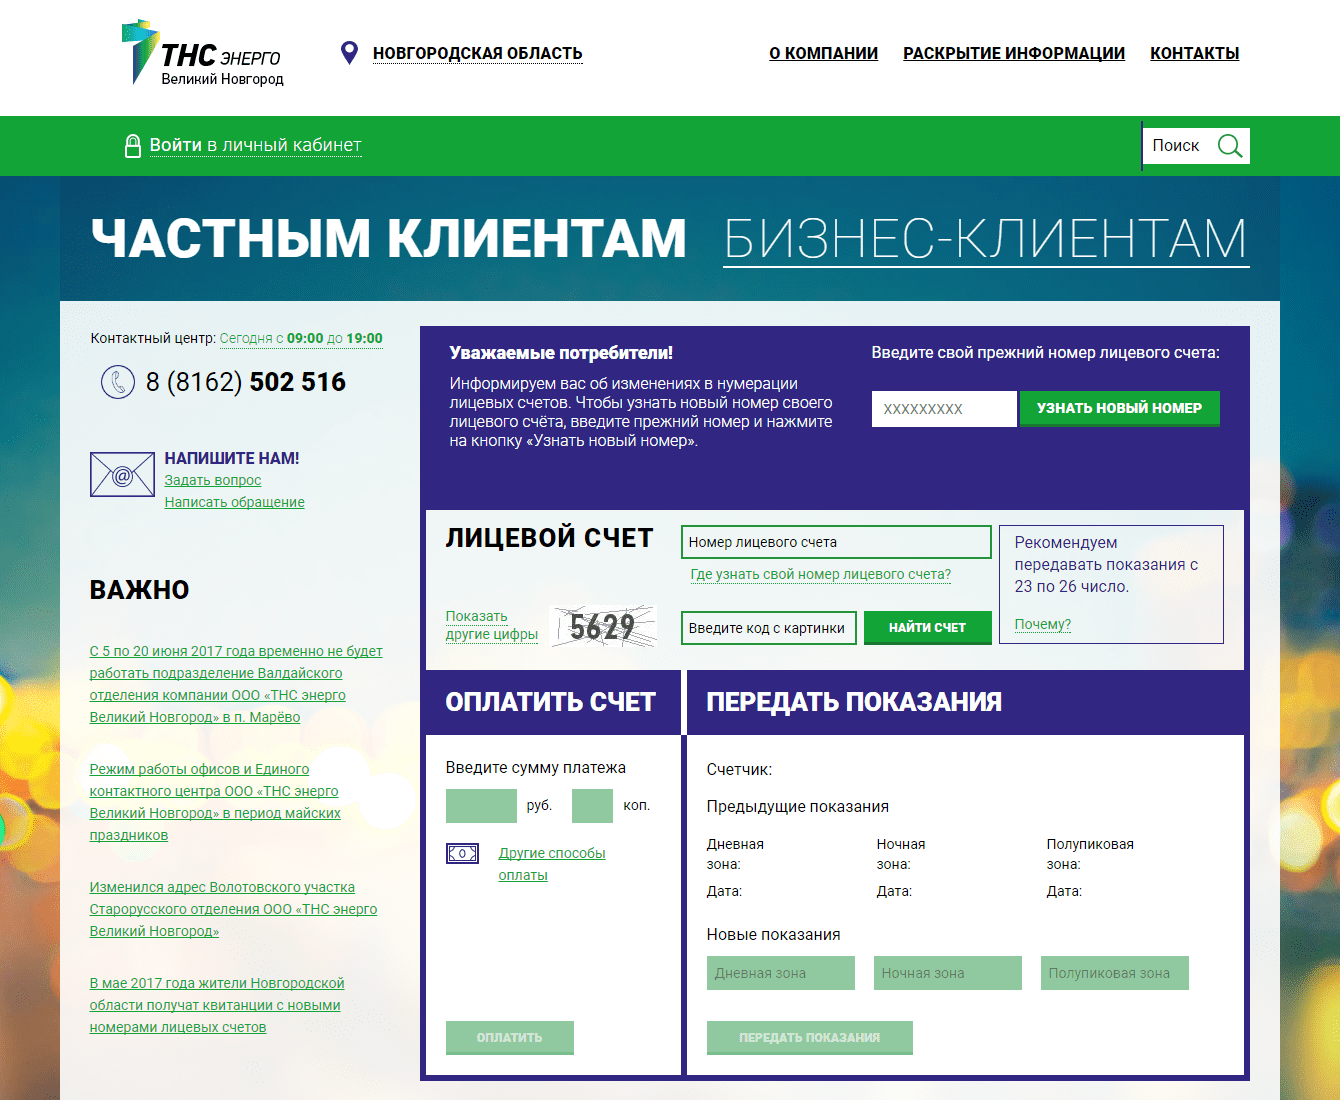 ТНС Энерго Великий Новгород официальный сайт